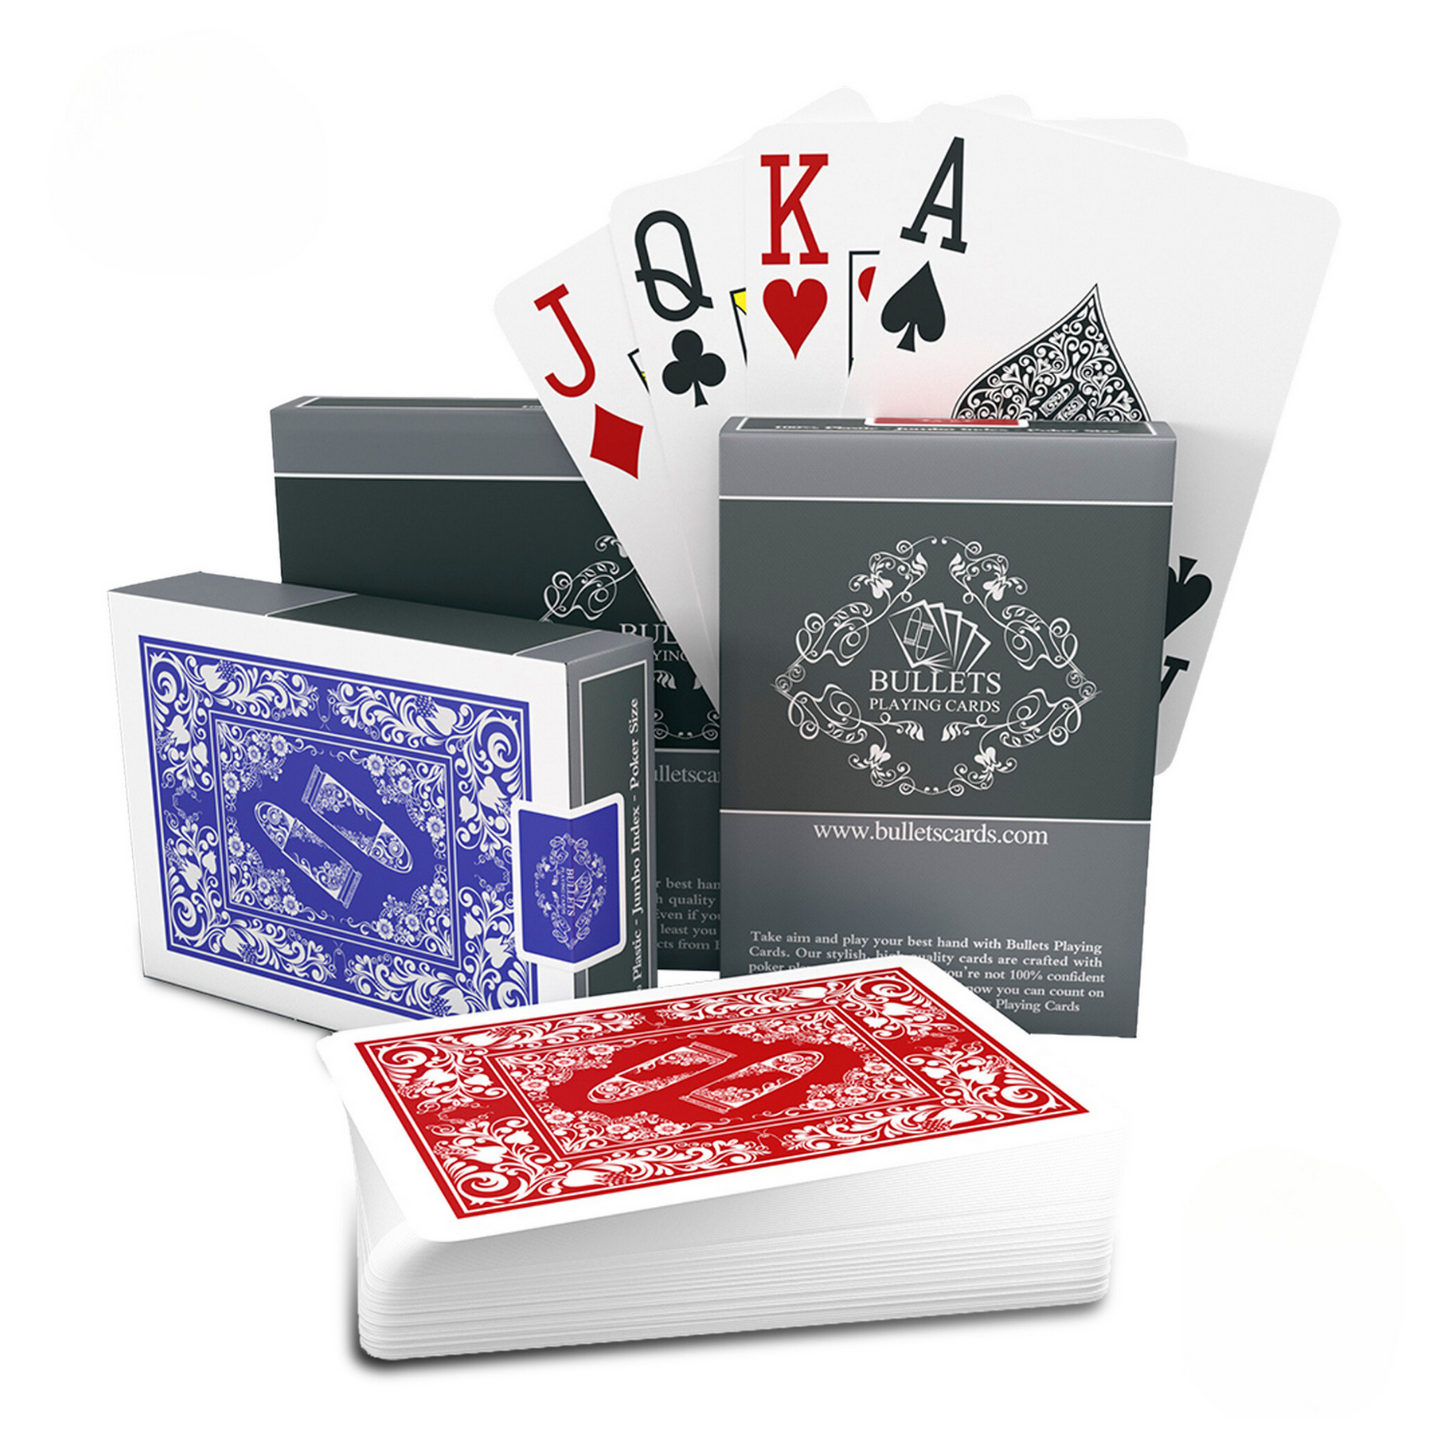 Pokerkarten aus Plastik, Poker-Size, Doppelpack, Jumbo Index, 2 oder 4 Eckzeichen